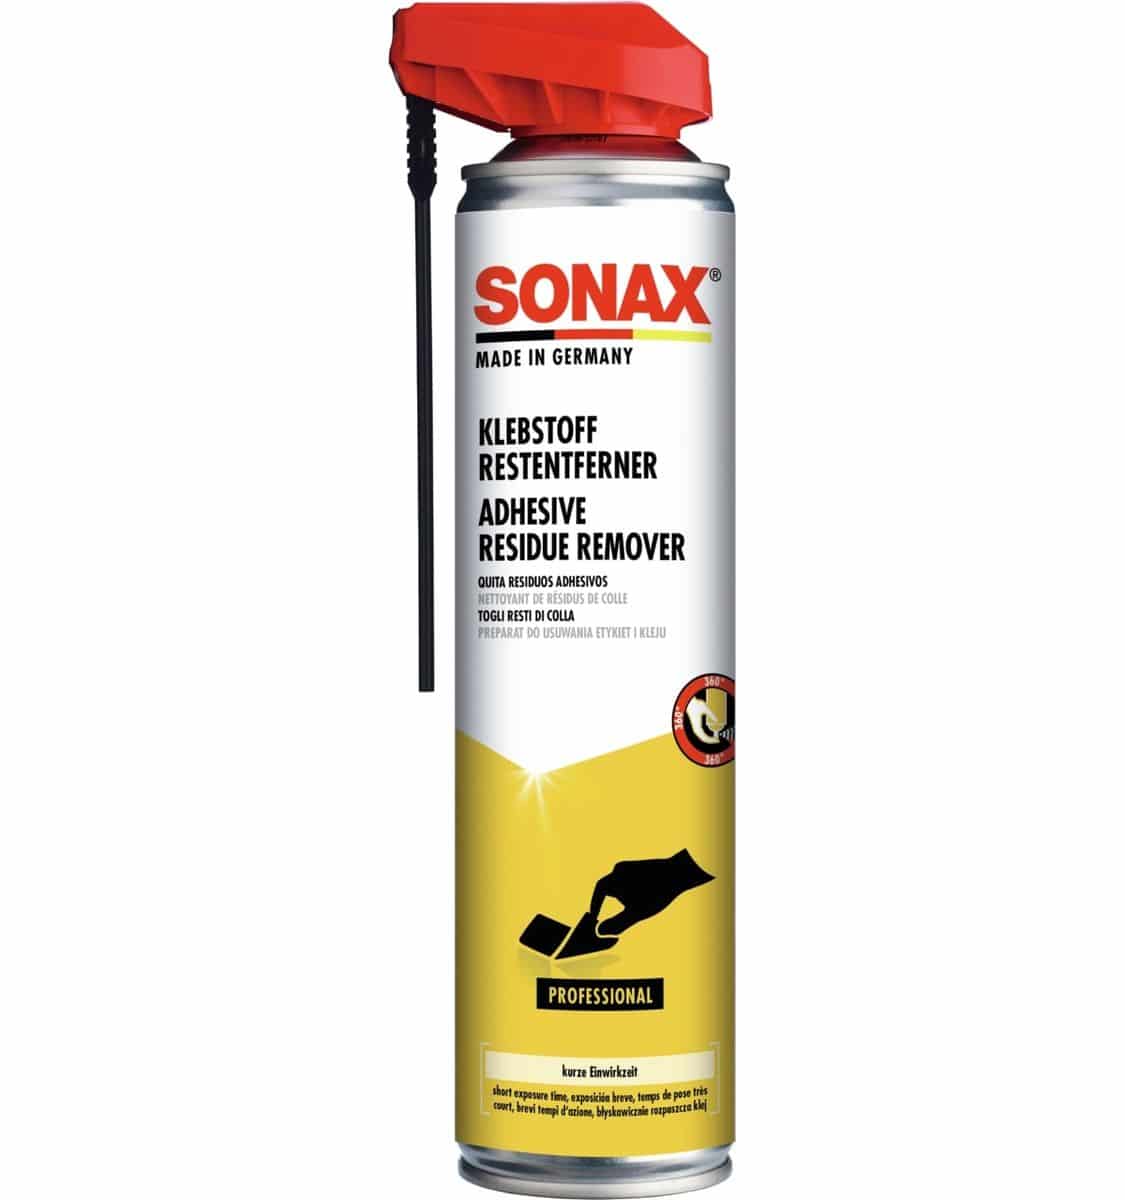 SONAX Klebstoffrestentferner mit EasySpray, 400 ml, 04773000 von Sonax